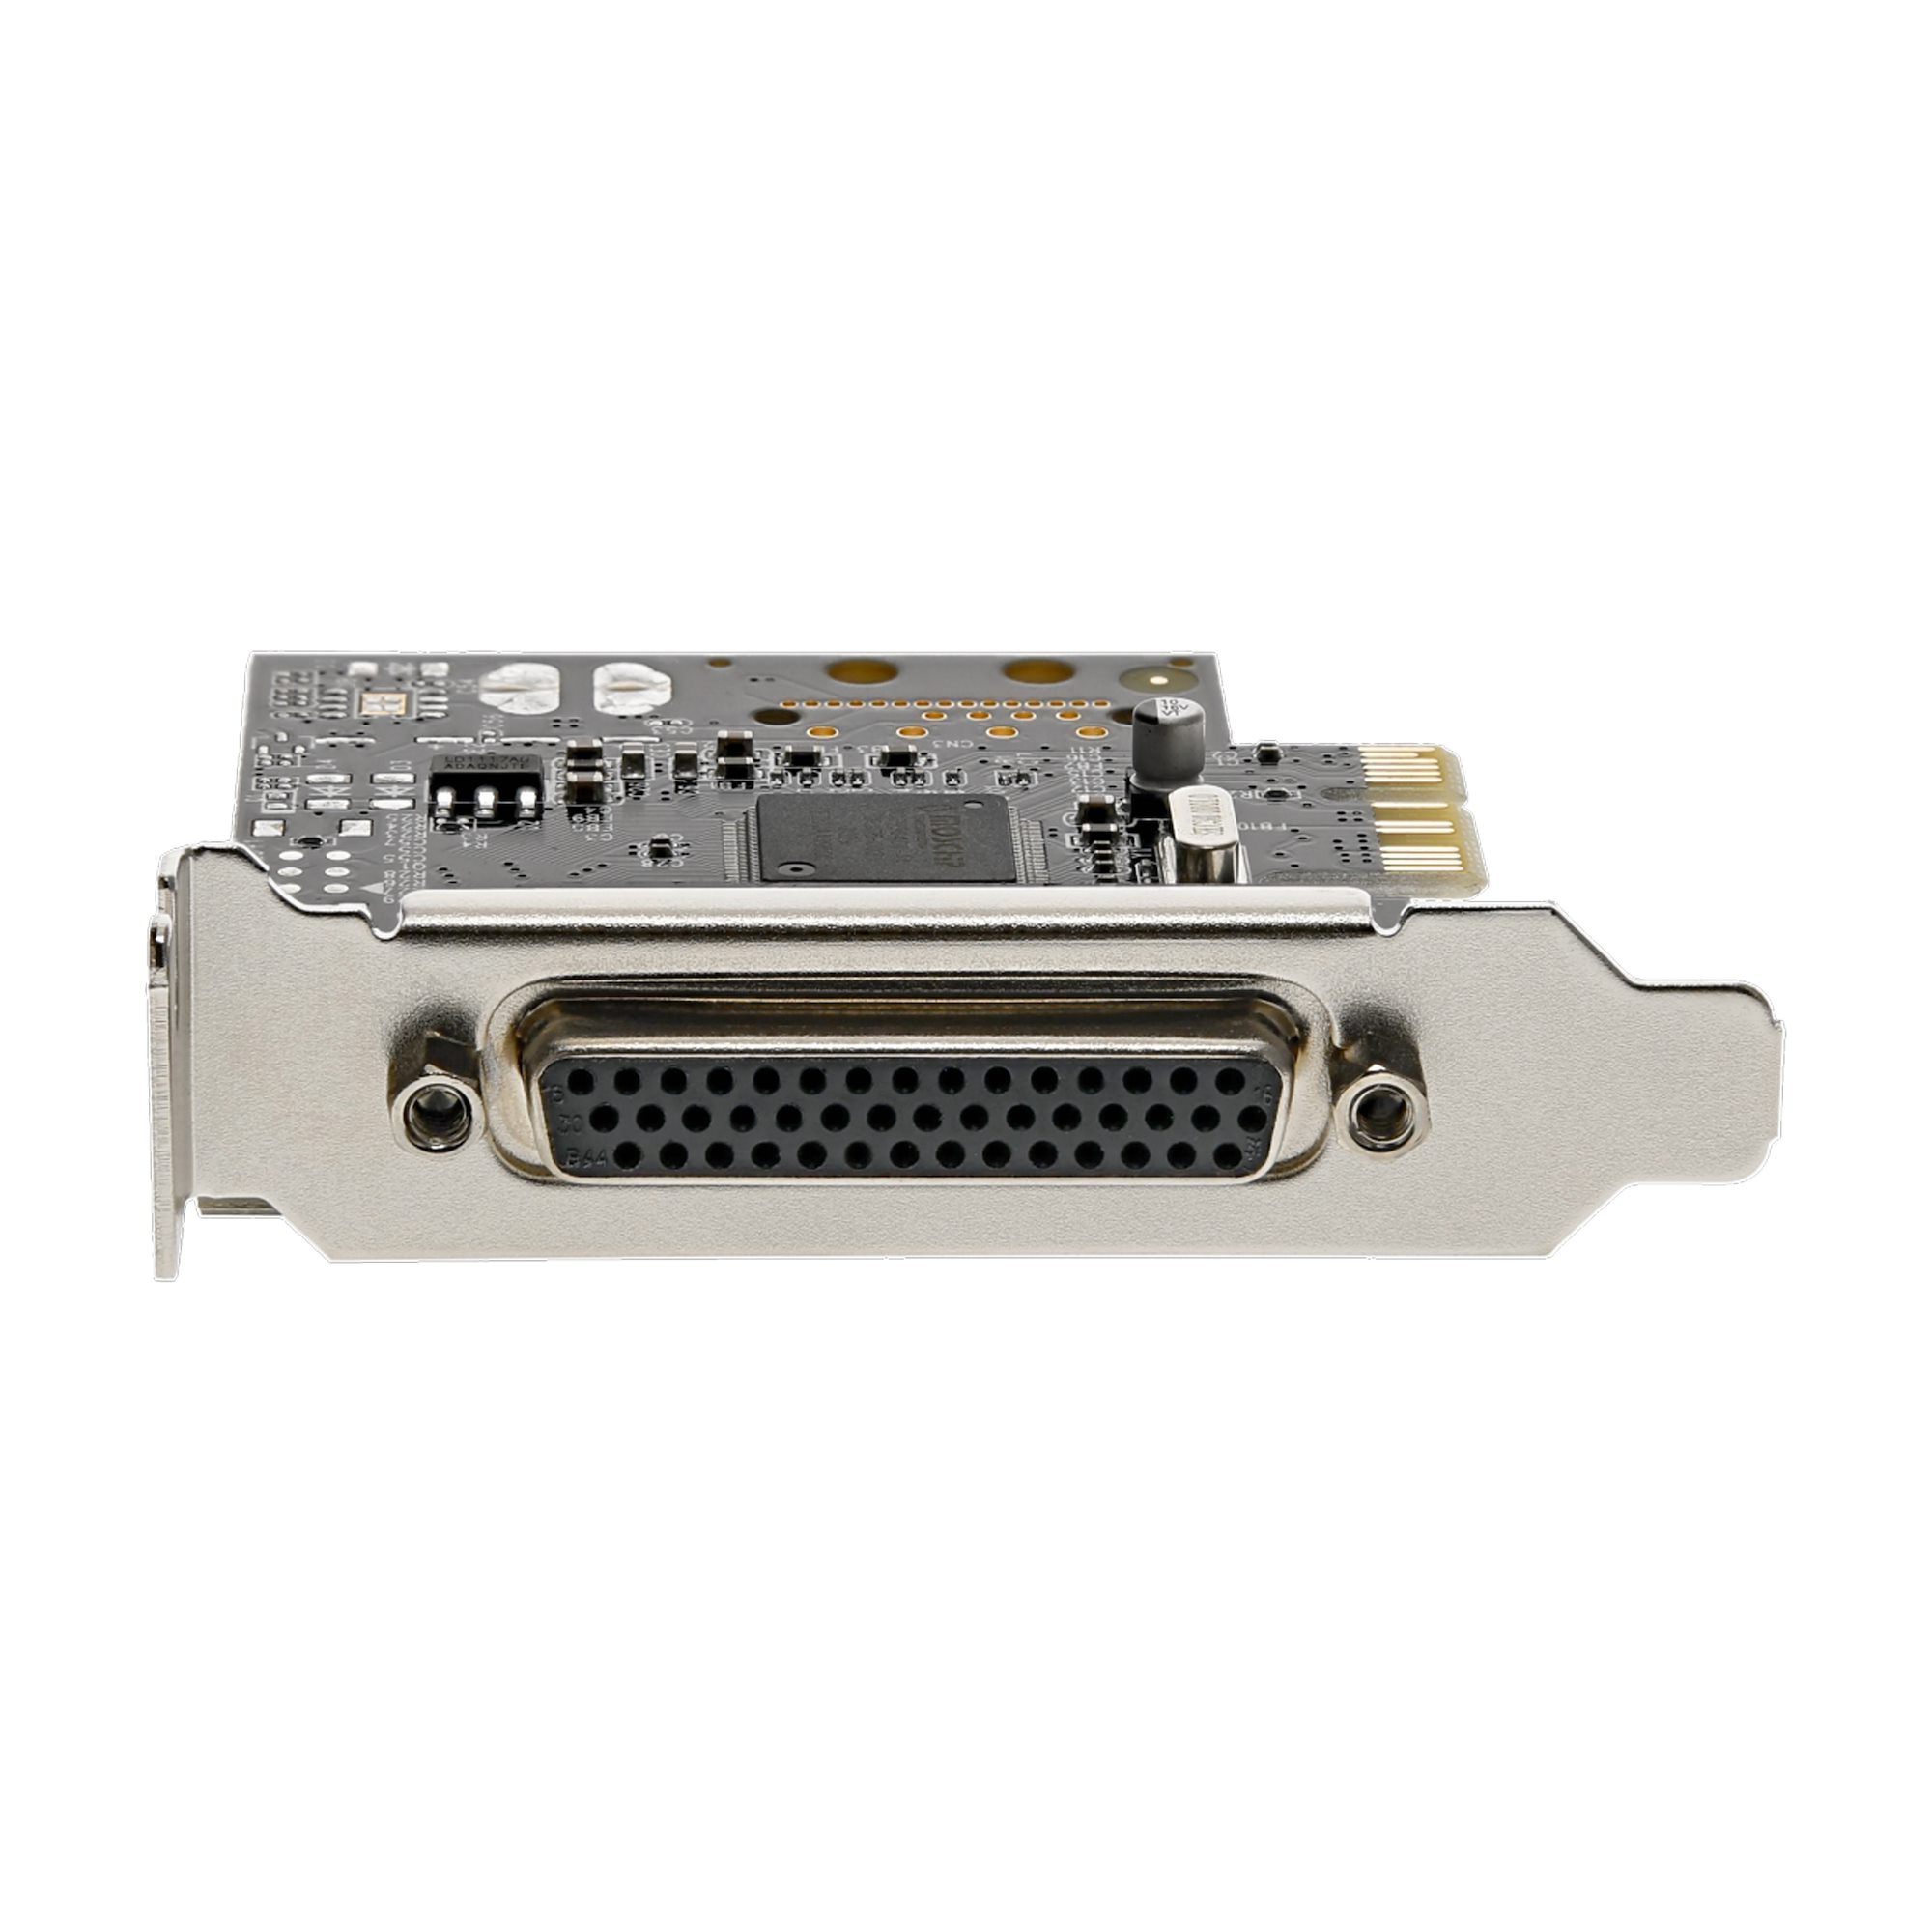 RS232Cシリアル(DB9) x4増設PCIeカード ブレークアウトケーブル付 シリアルカード  アダプタ 日本